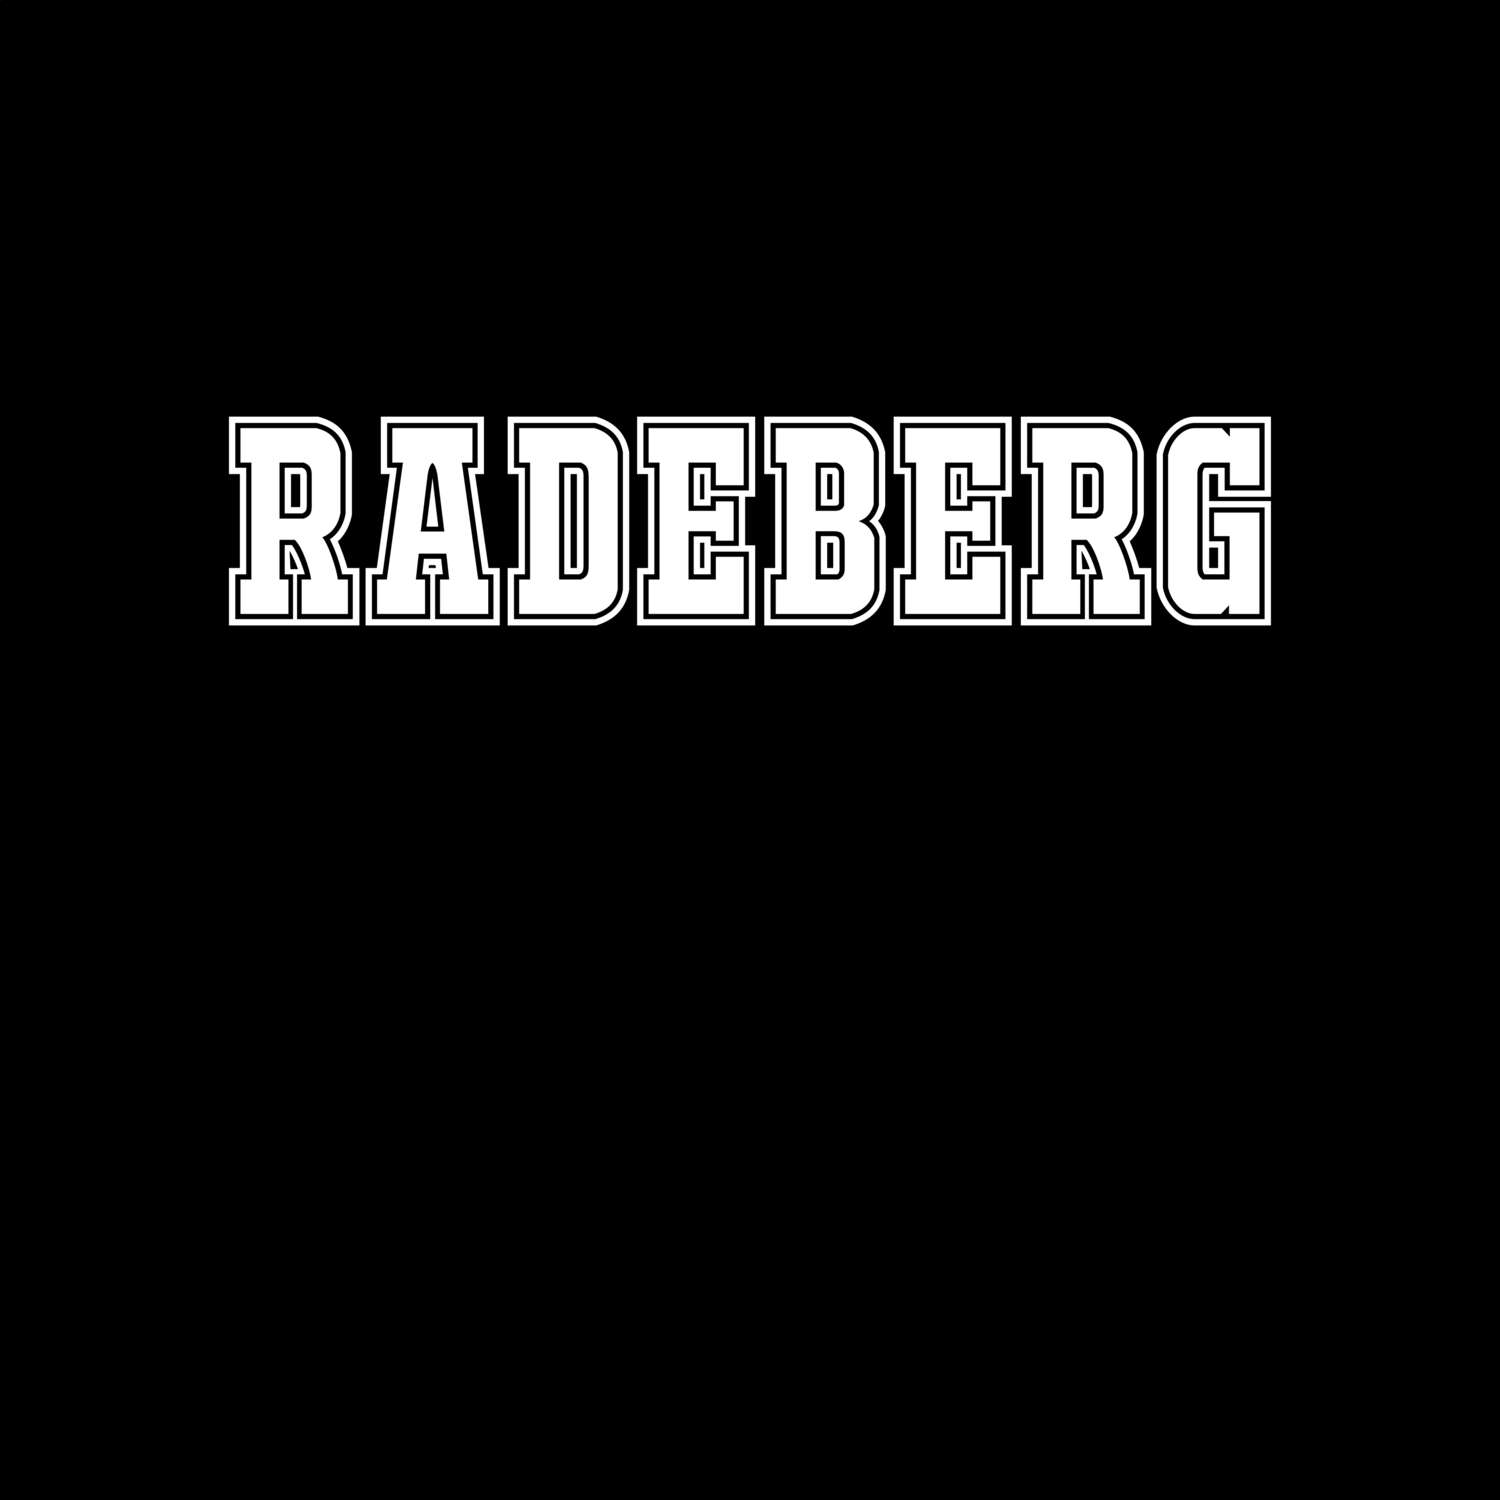 Radeberg T-Shirt »Classic«